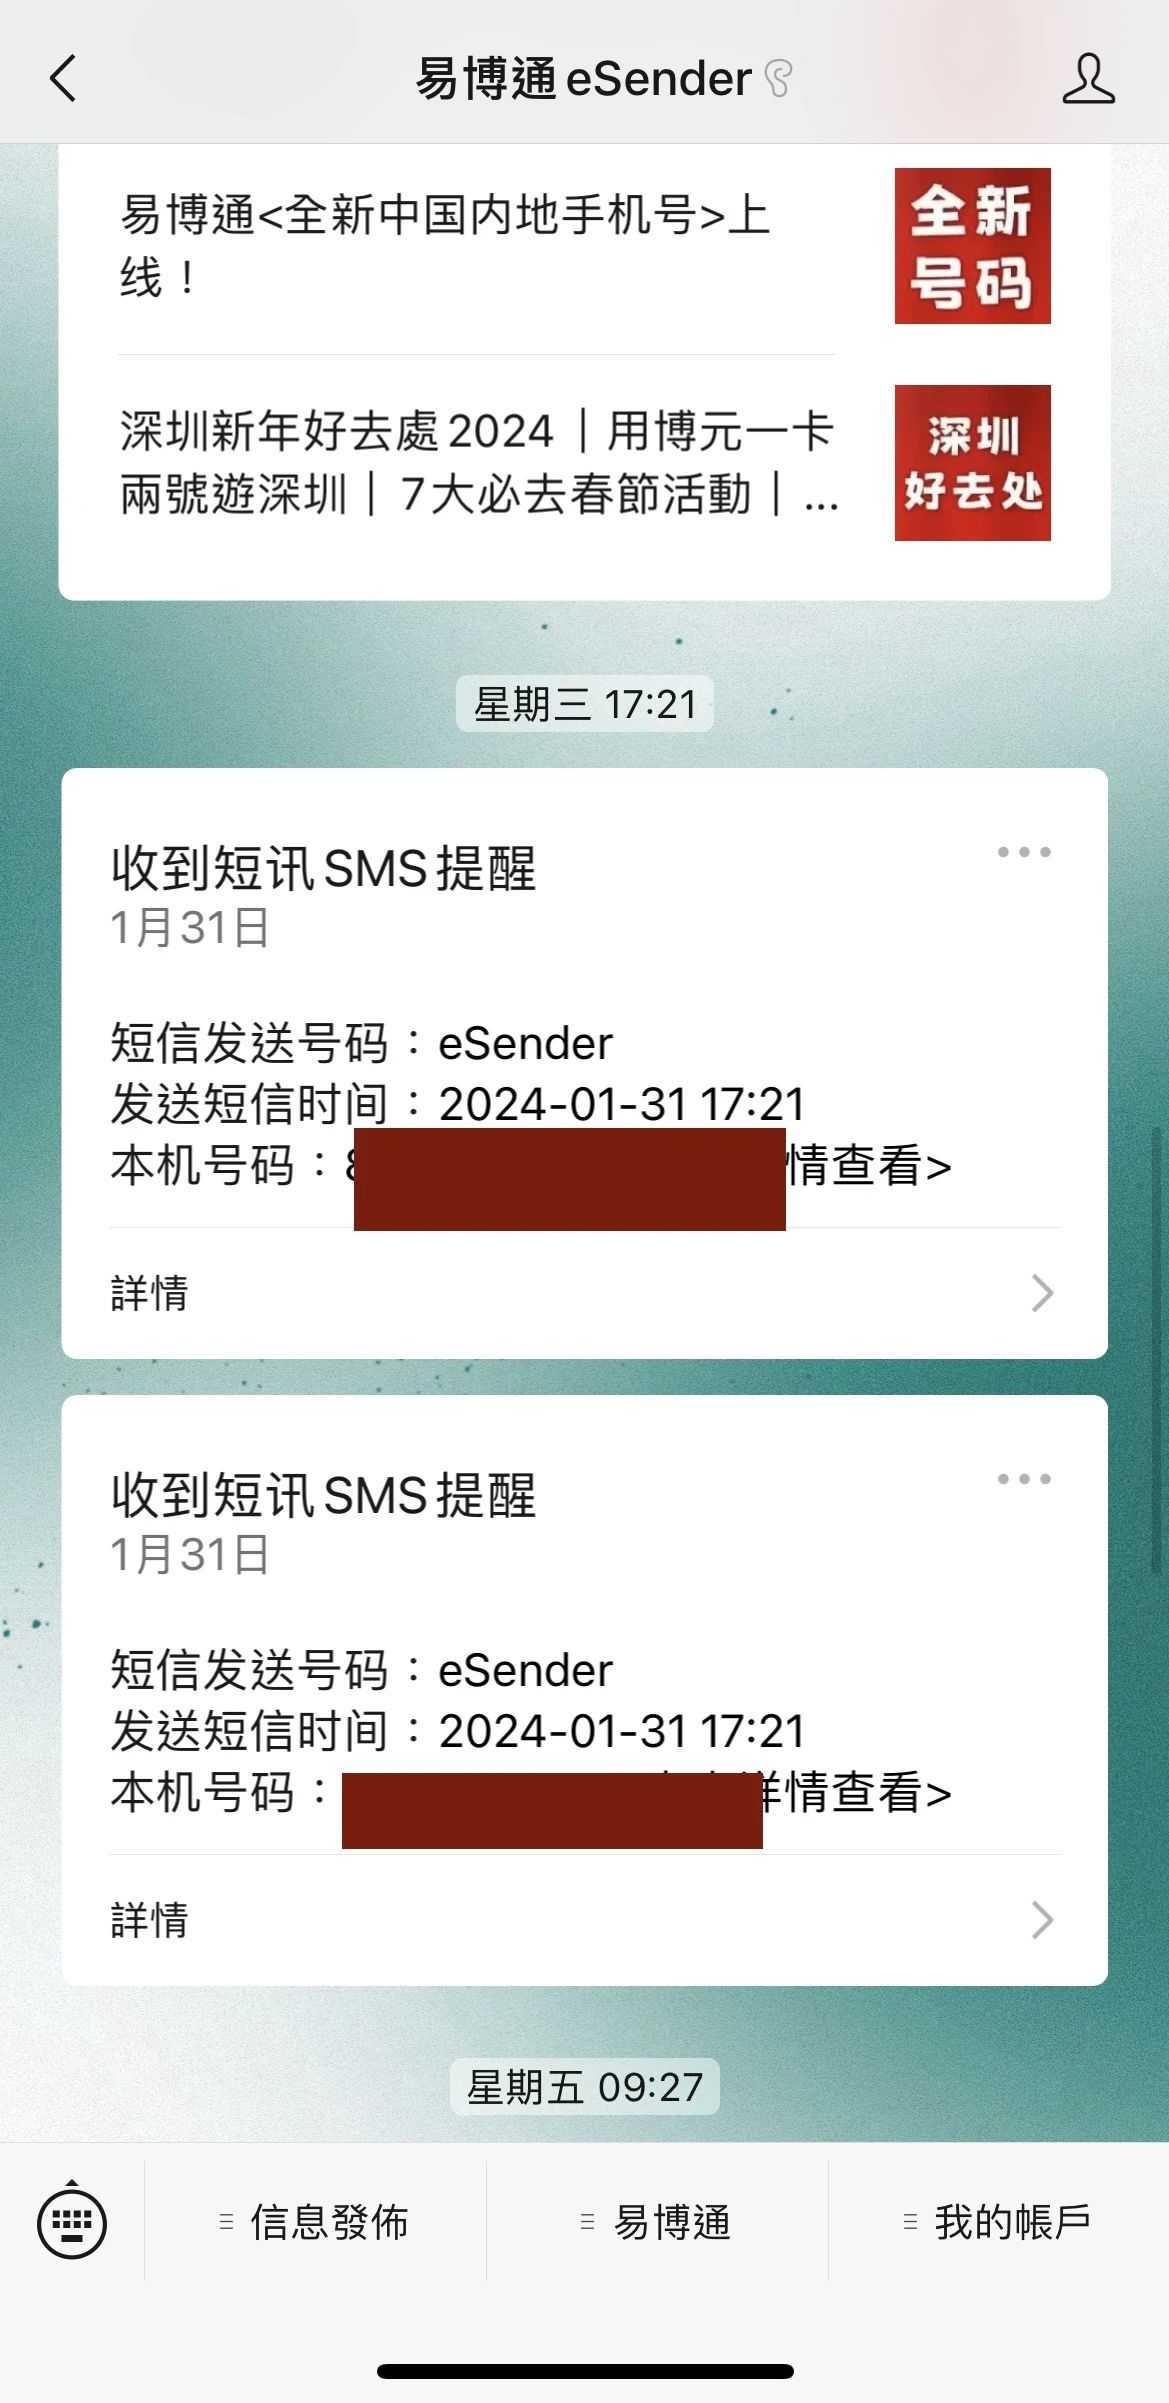 Adım 8: Ödemeyi tamamlayın ve Hong Kong cep telefonu numarasının başarıyla sipariş edildiğini belirten SMS alın.